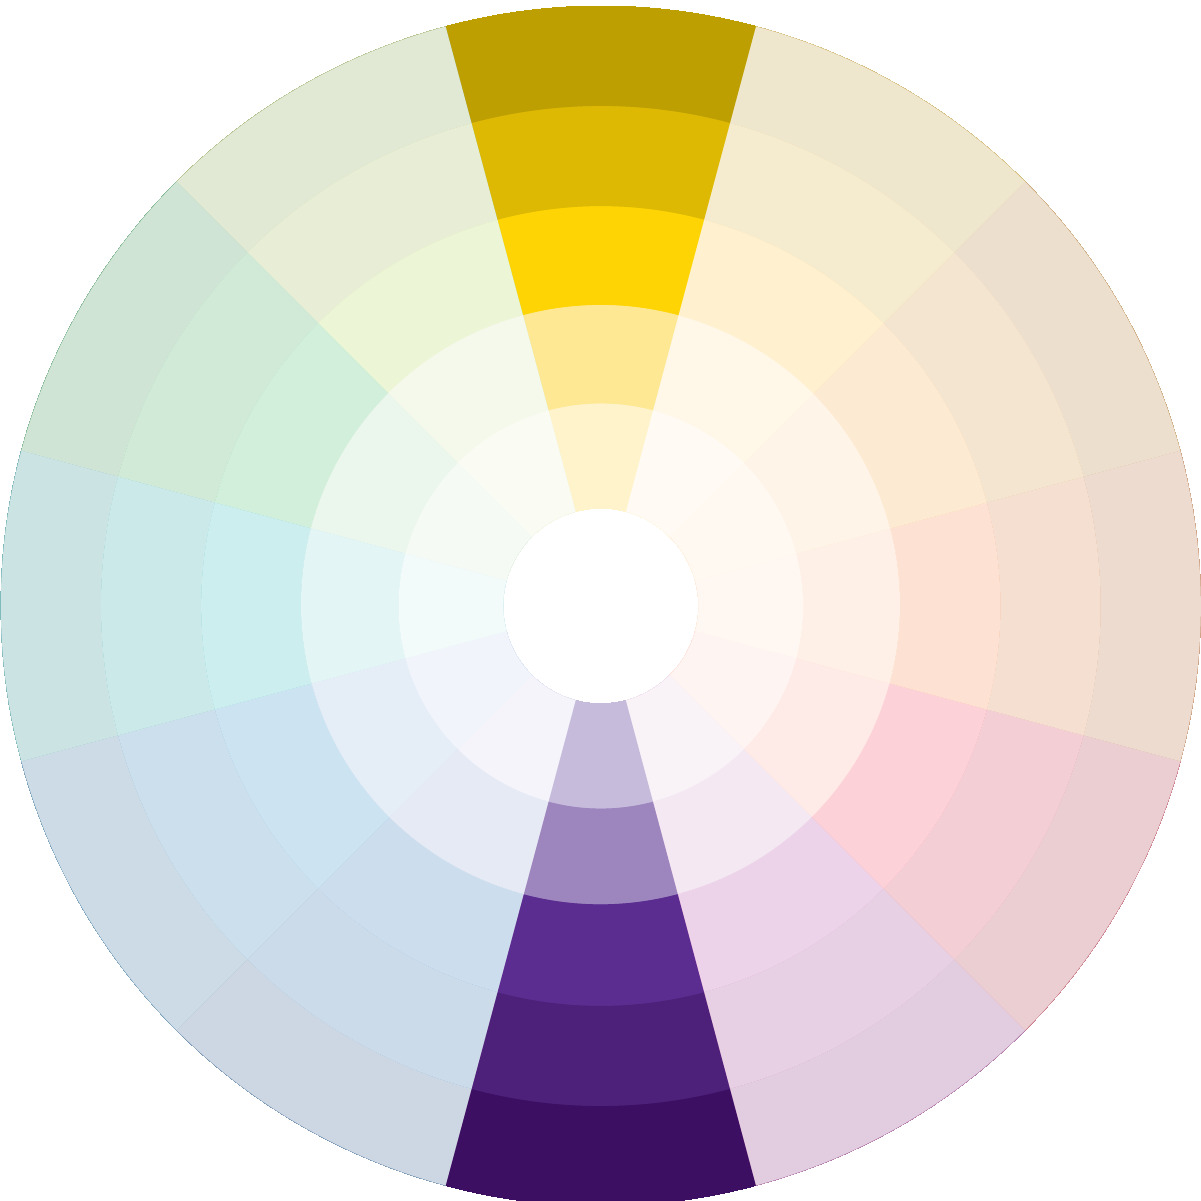 Círculo cromático com as cores complementares amarelo e roxo - Essa referência ajuda na hora de combinar as cores Suvinil